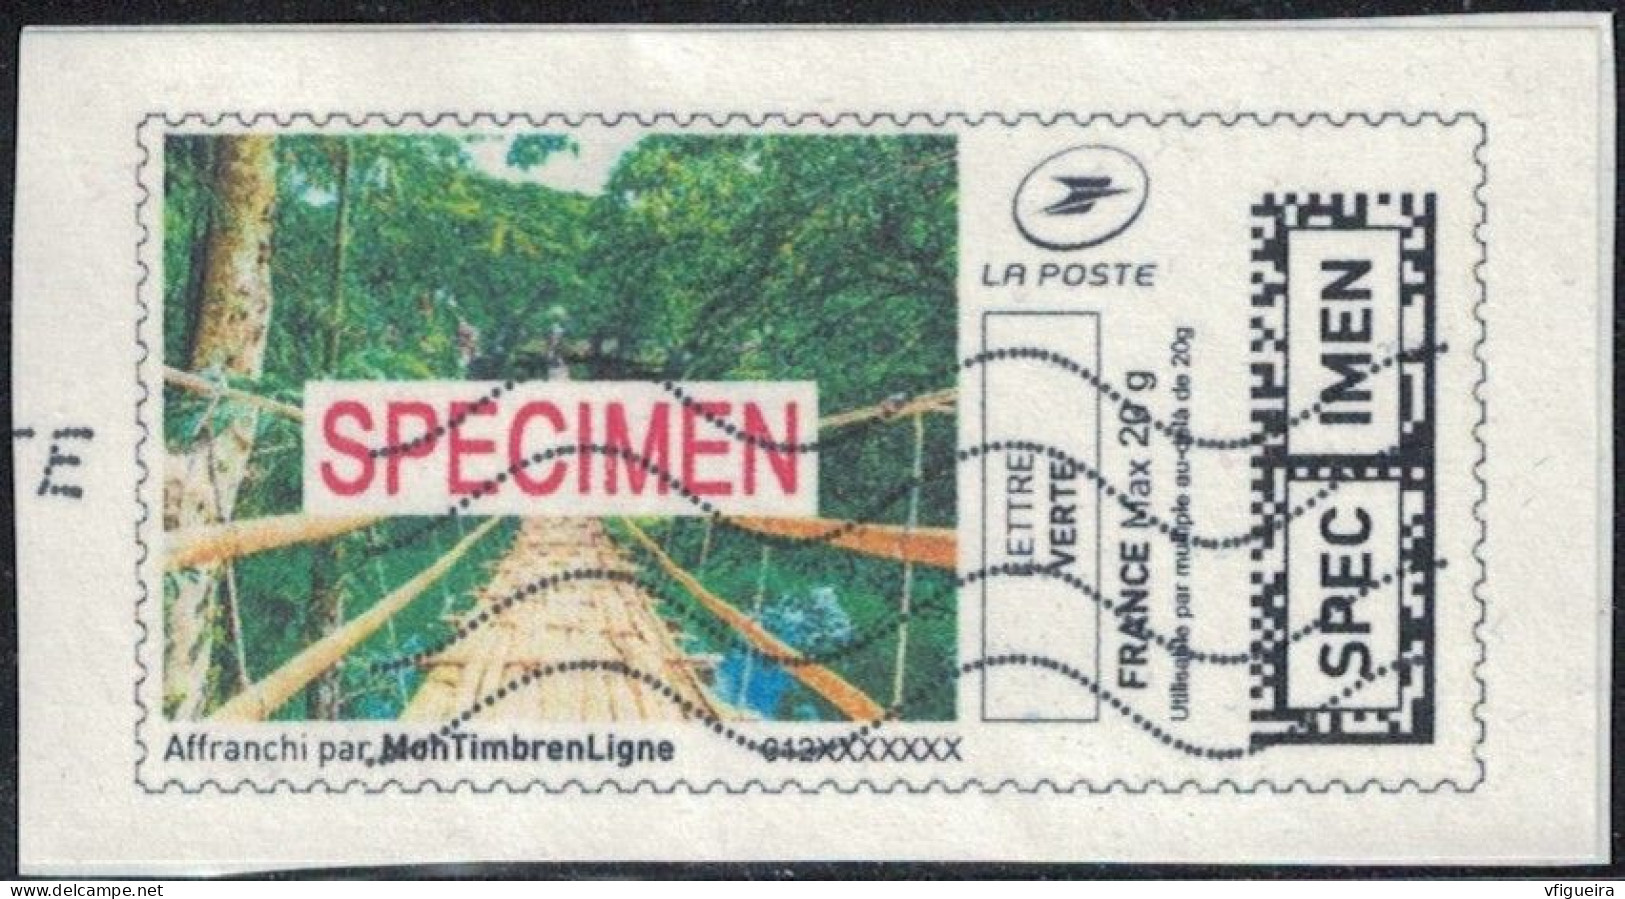 France Vignette Sur Fragment Used Mon Timbre En Ligne Spécimen Affranchie SU - Timbres à Imprimer (Montimbrenligne)